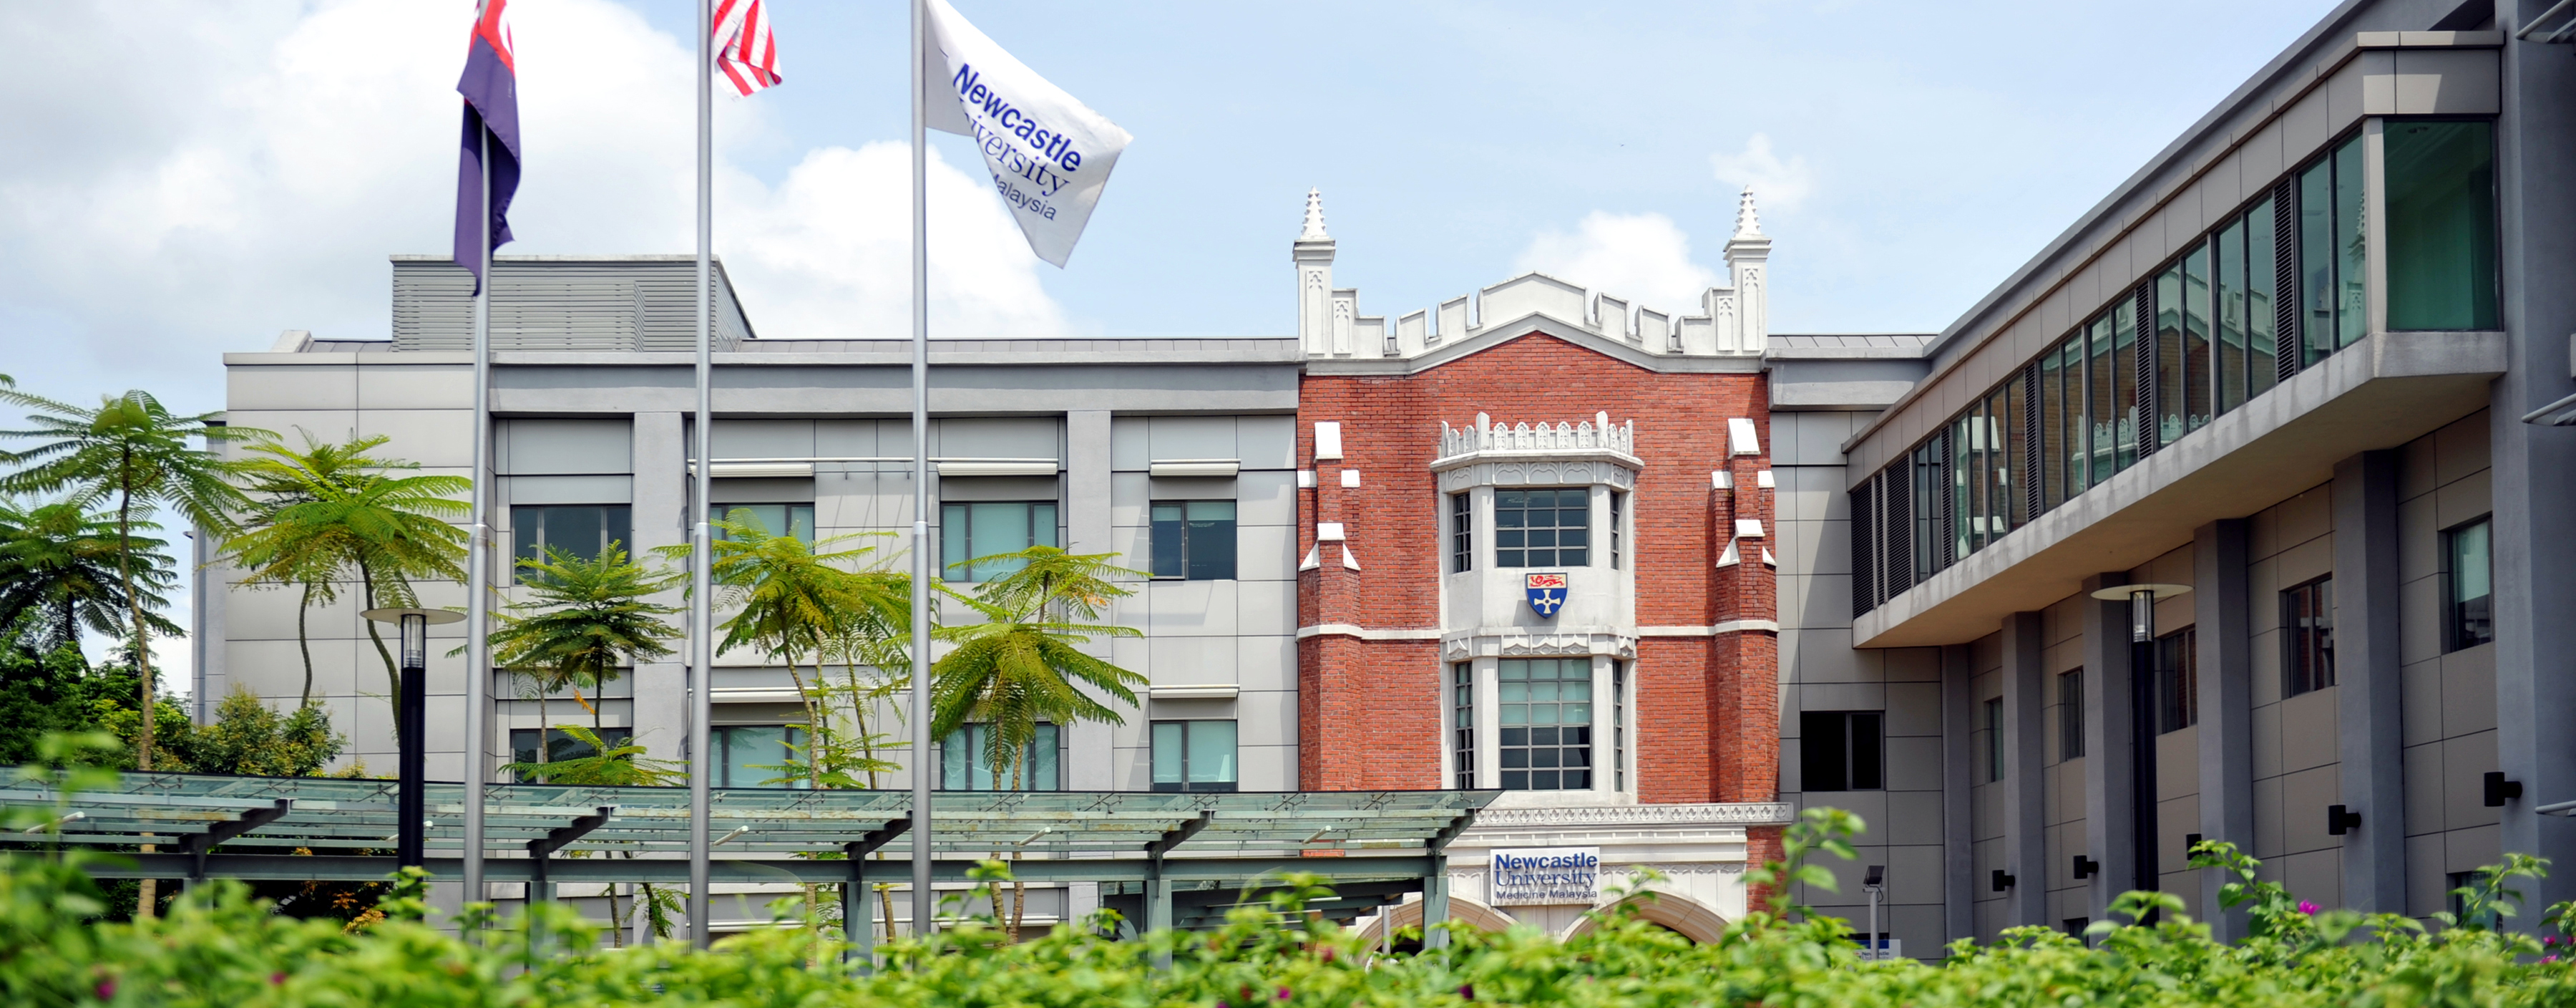 Малайзия университеты. Вулунг университет Малайзия. Университет науки Малайзия. Линкольн университет Малайзия. Технологический университет Малайзии.